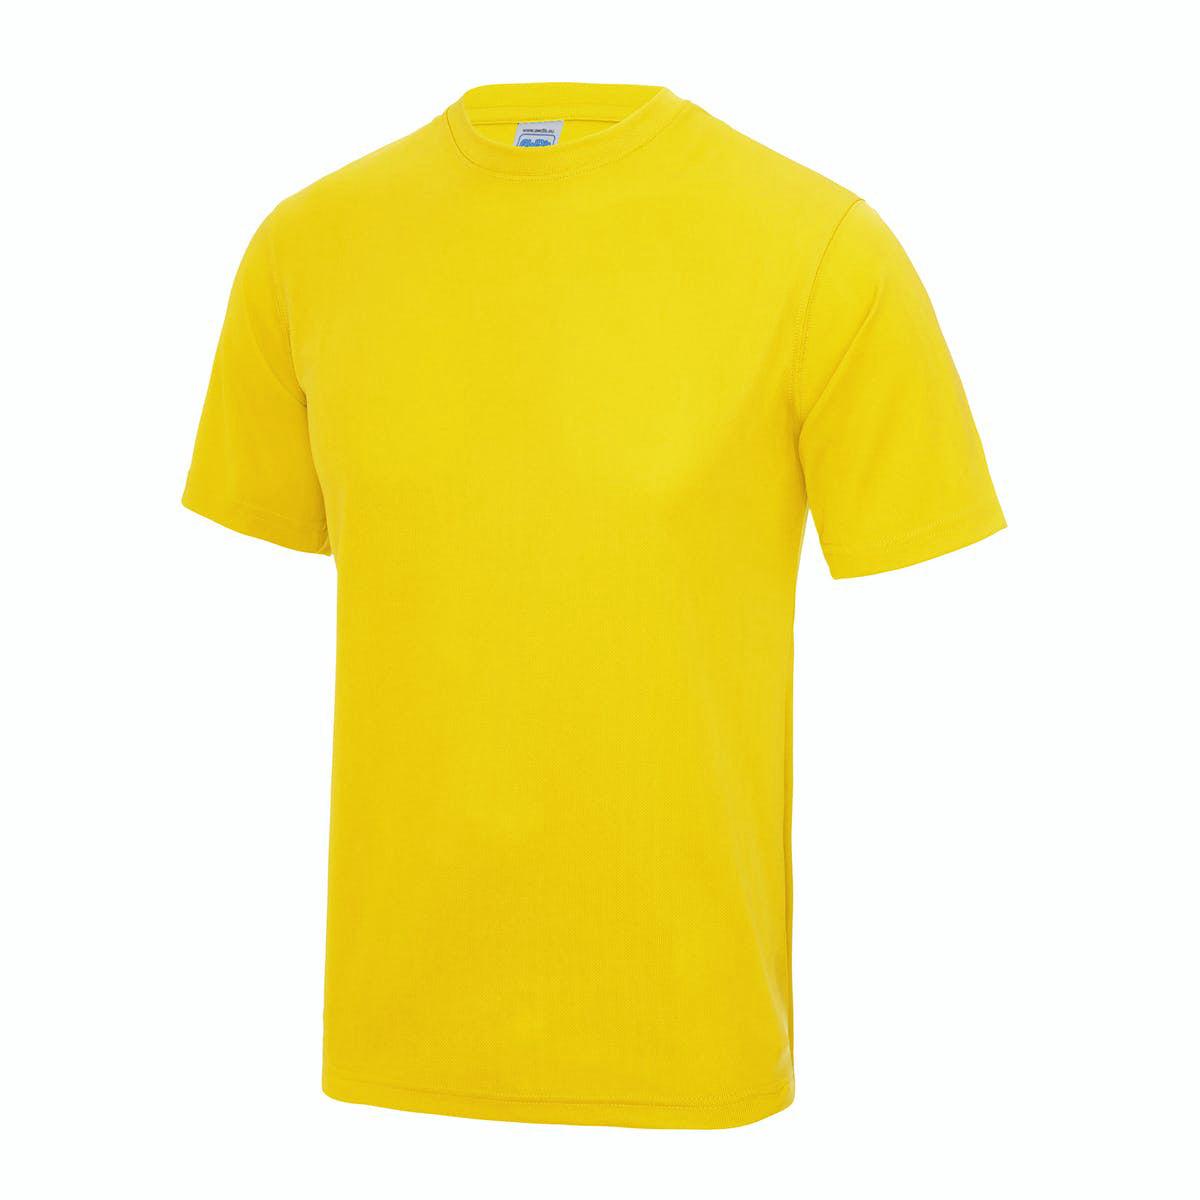 Yellow Sports T Shirt